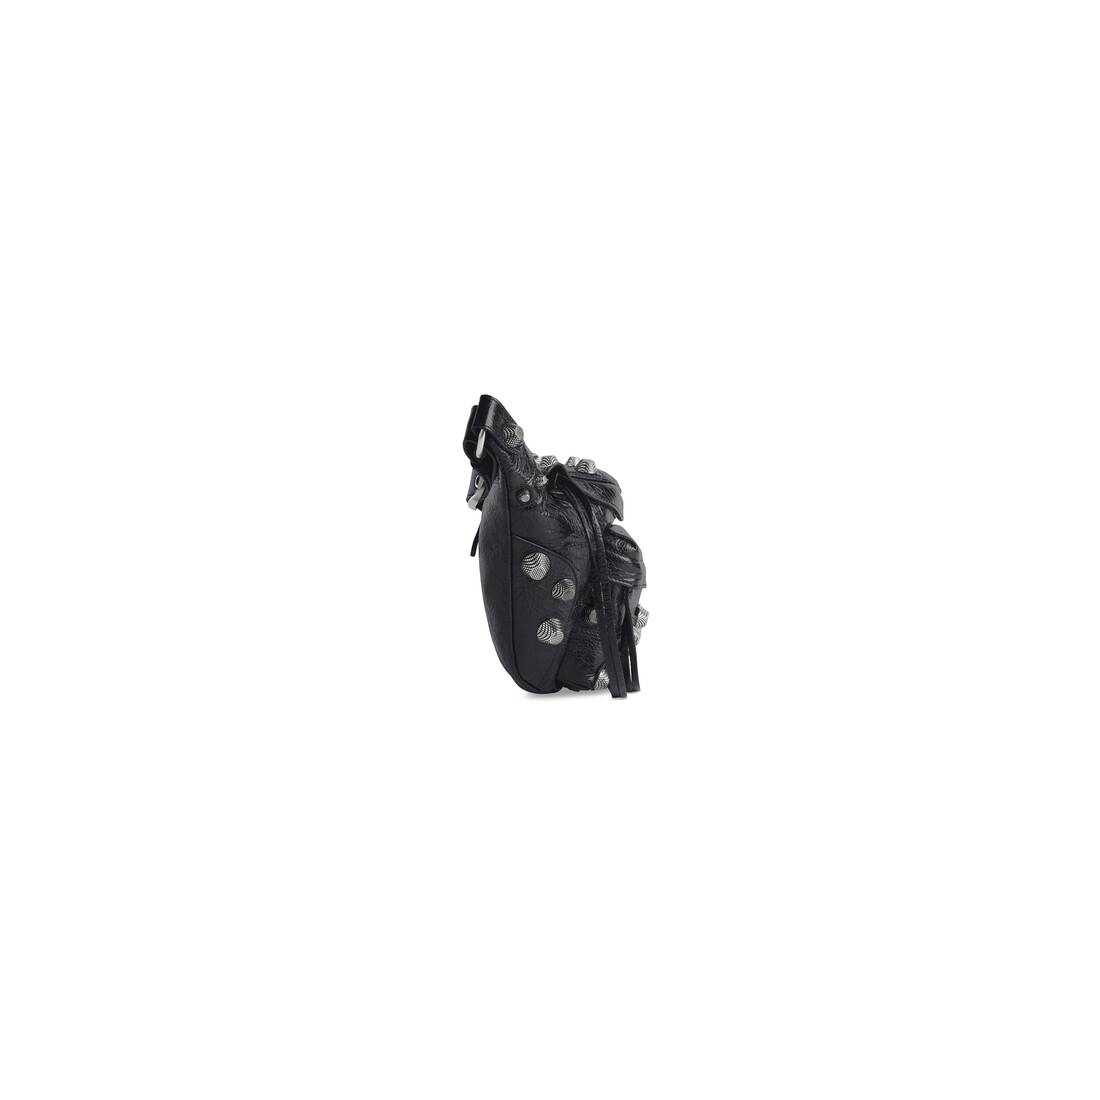 バレンシアガ カゴール ベルト バッグ 742014 ブラック 黒 メンズ